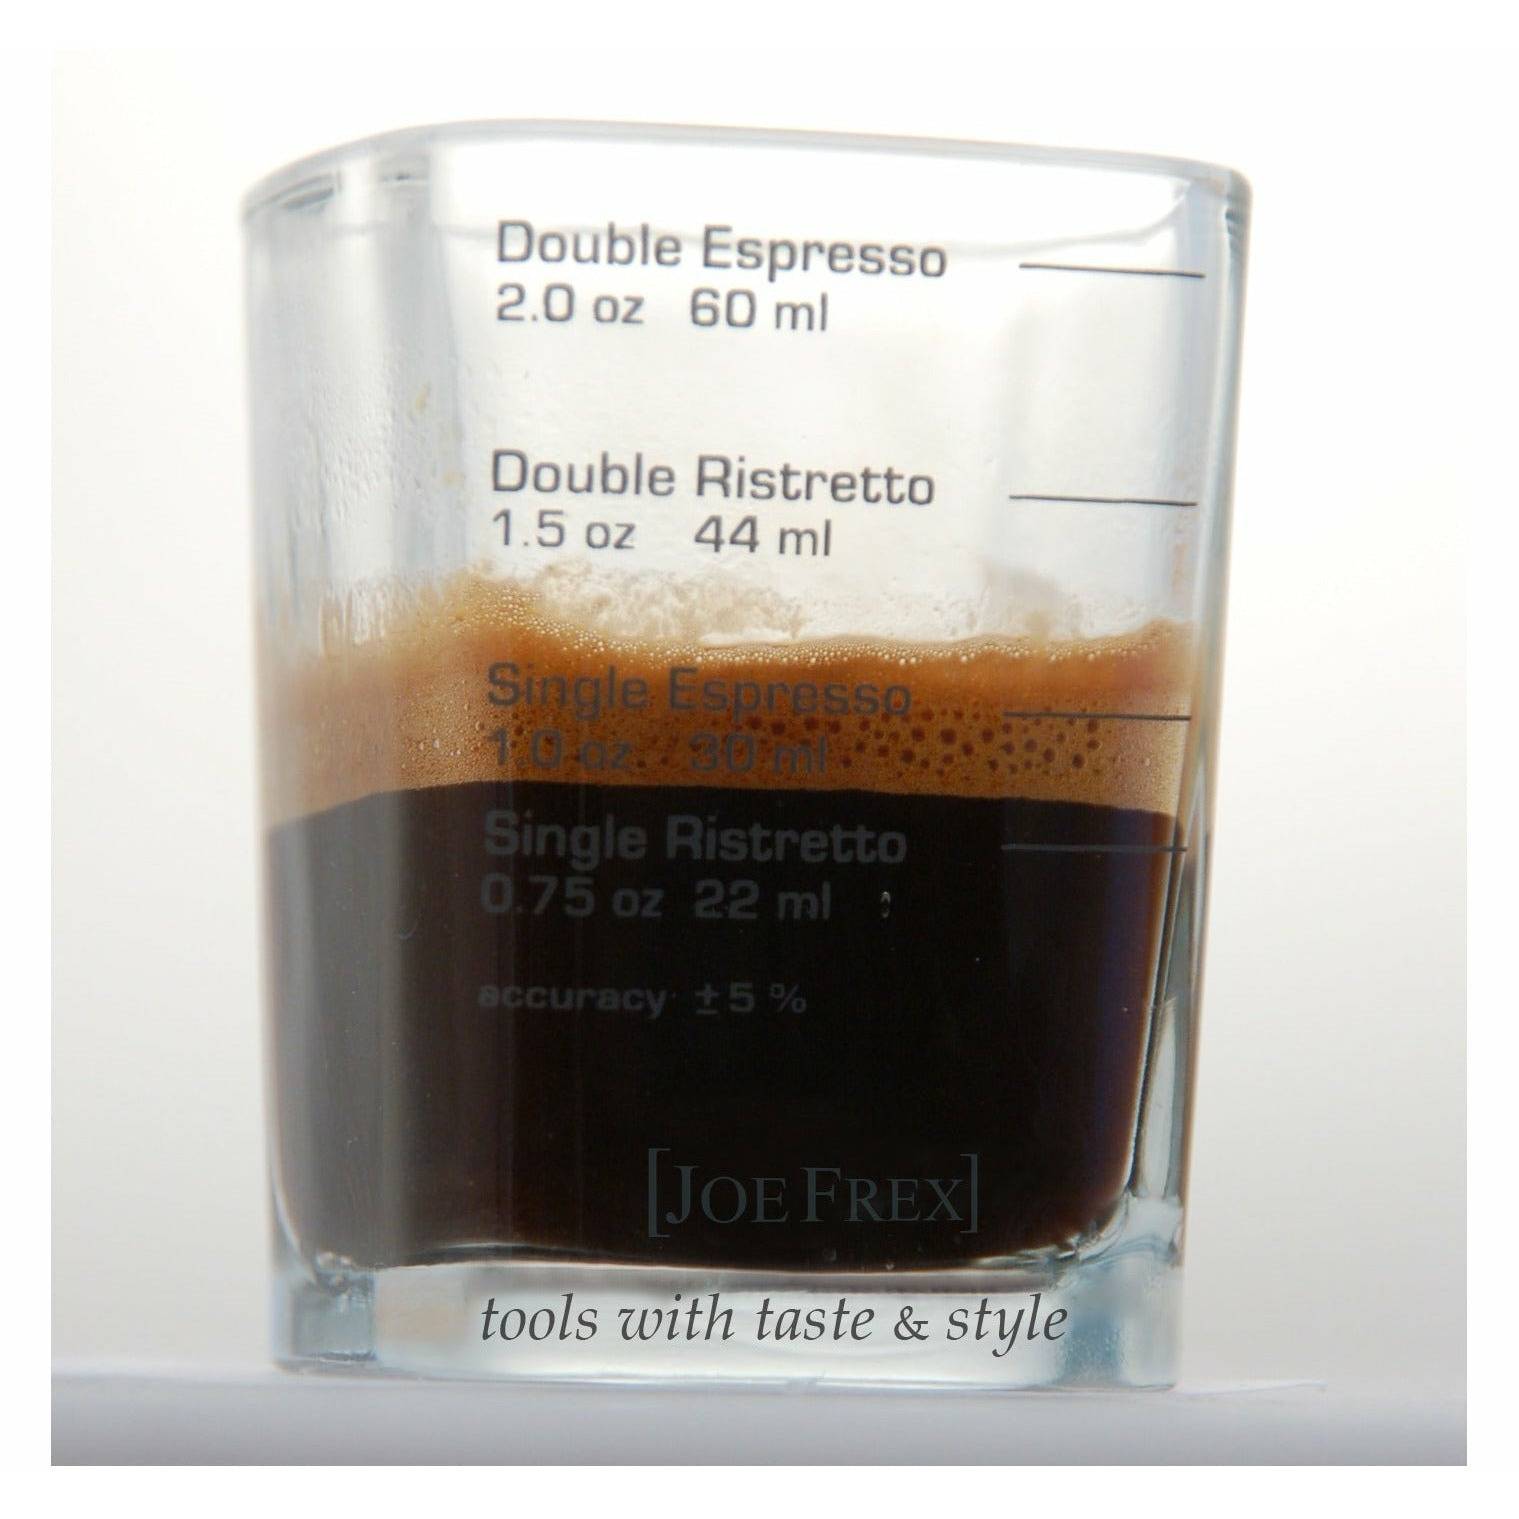 Espresso Shotglas Dosierbecher JoeFrex    - Rheinland.Coffee